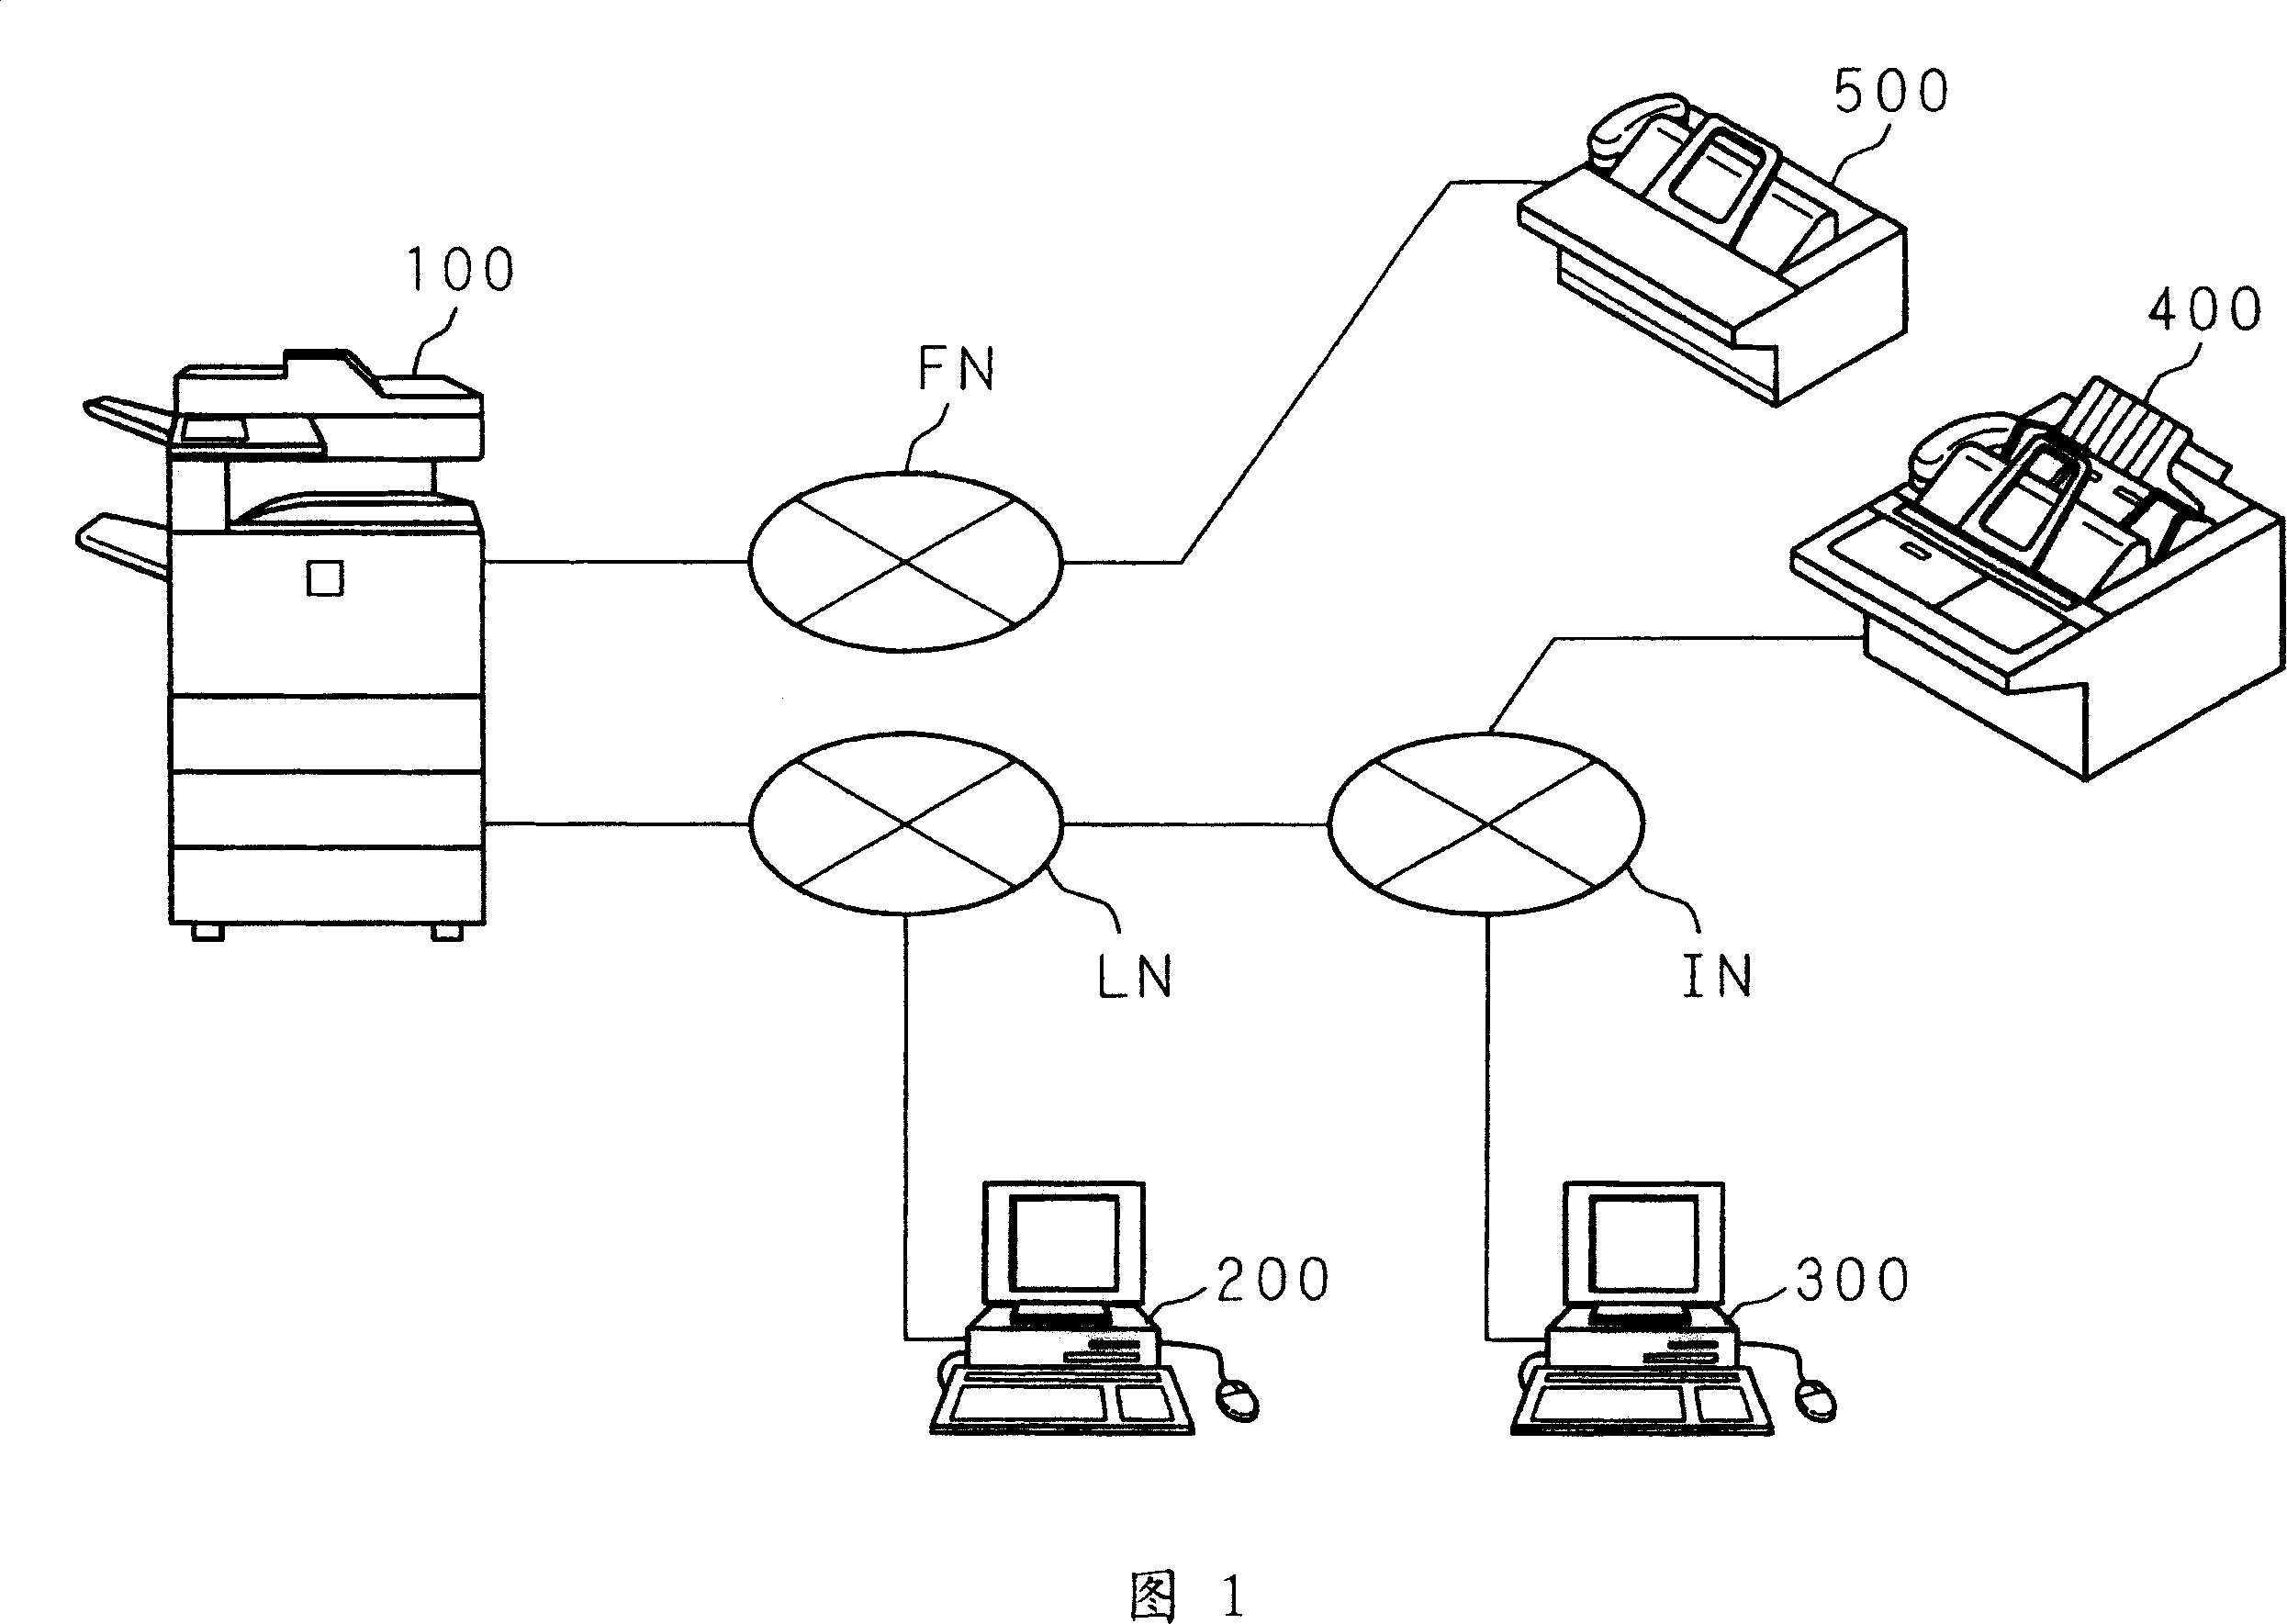 Image data transmitting apparatus